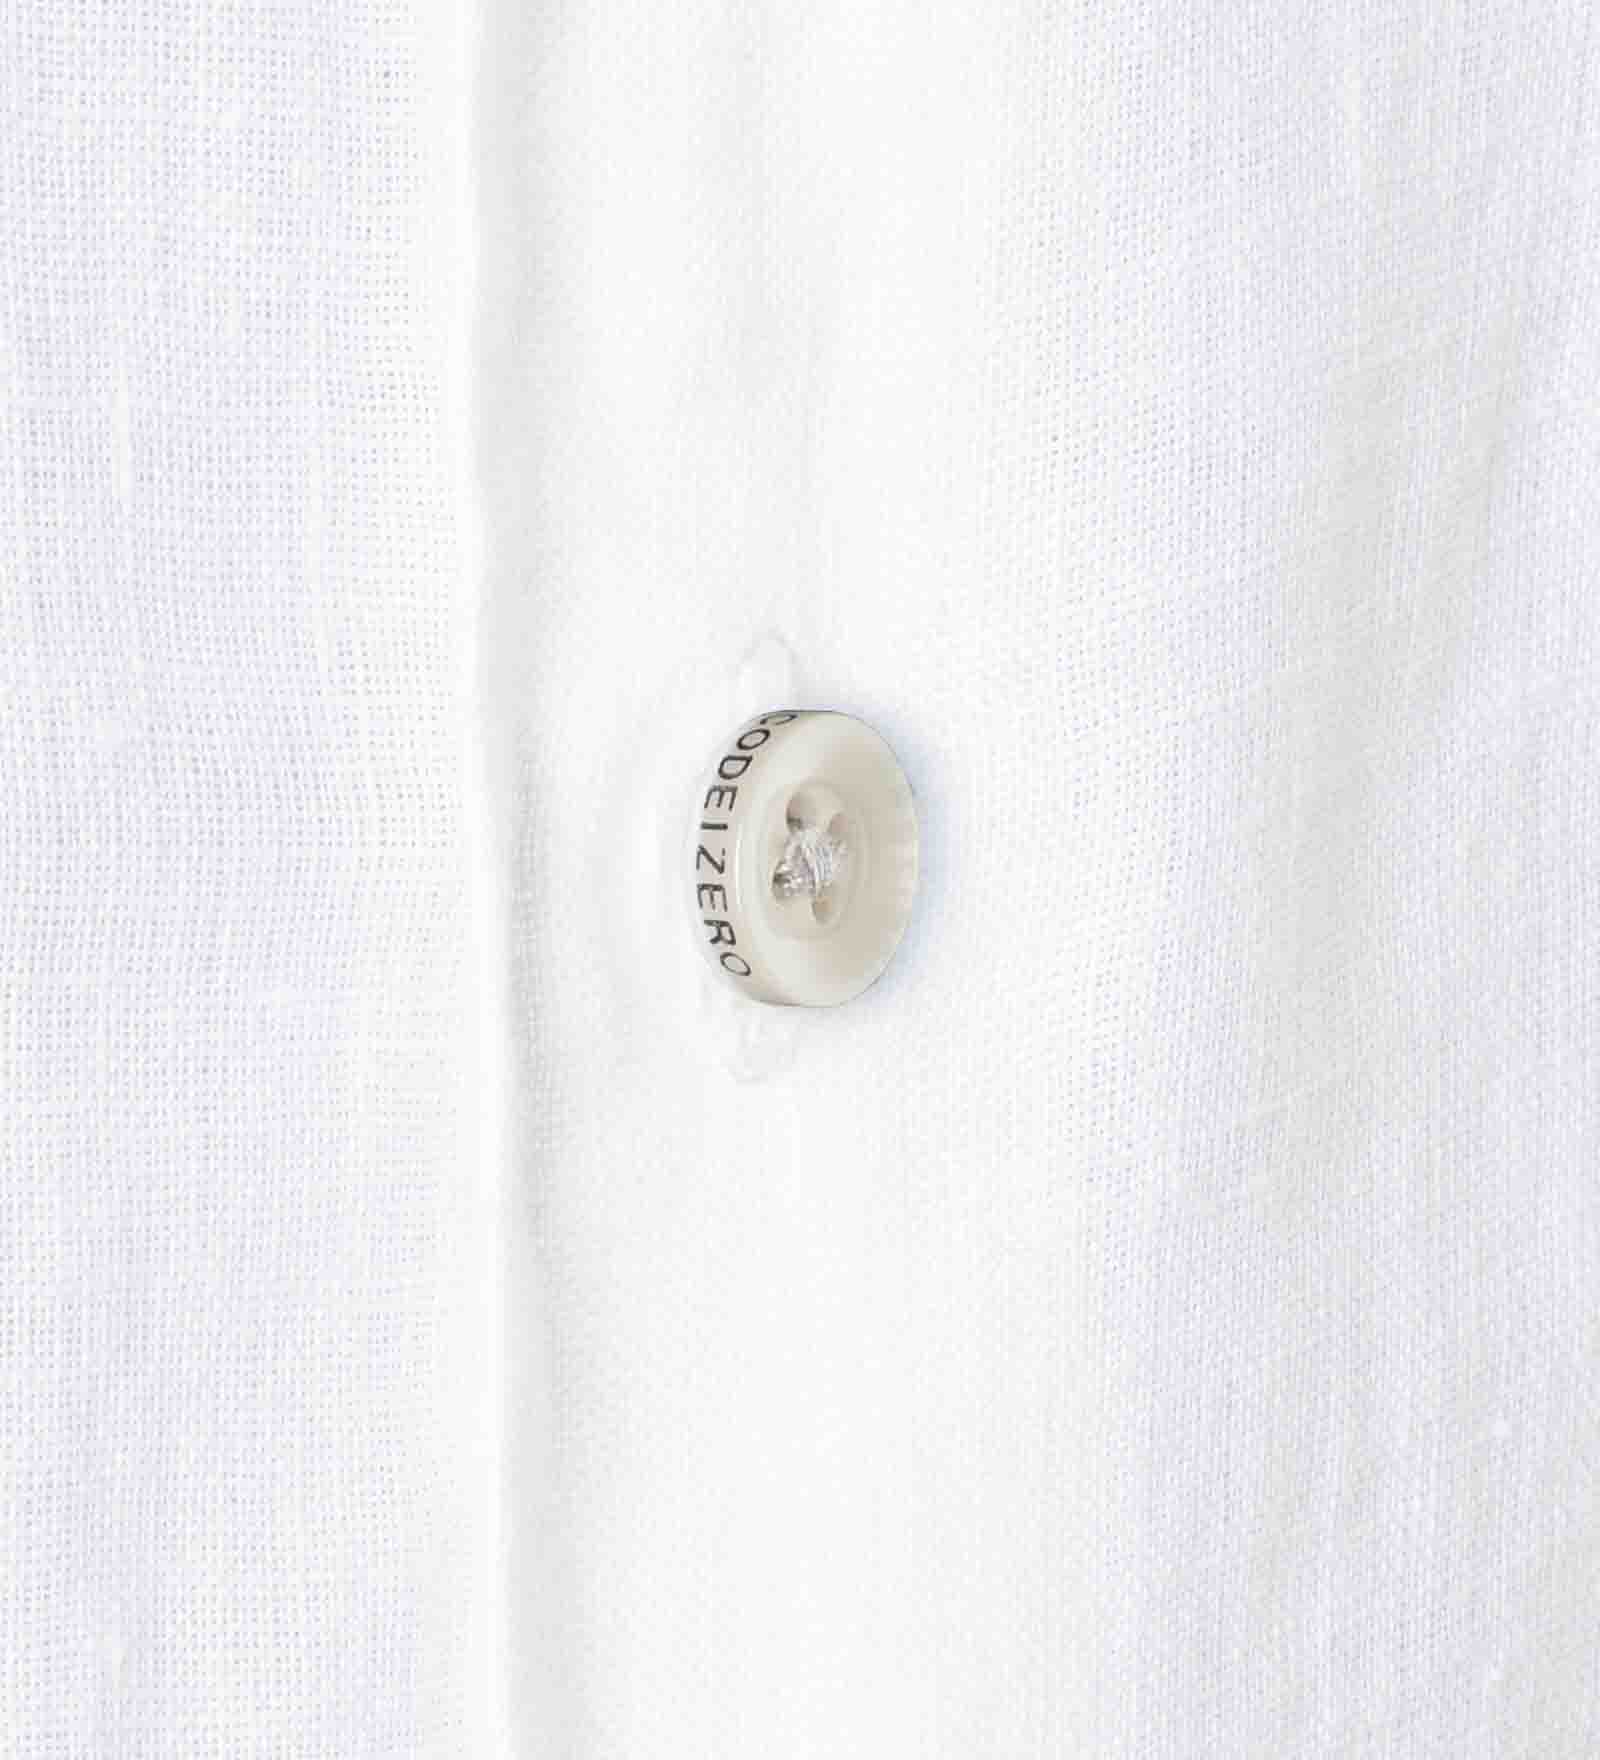 Linen Shirt White for Men 